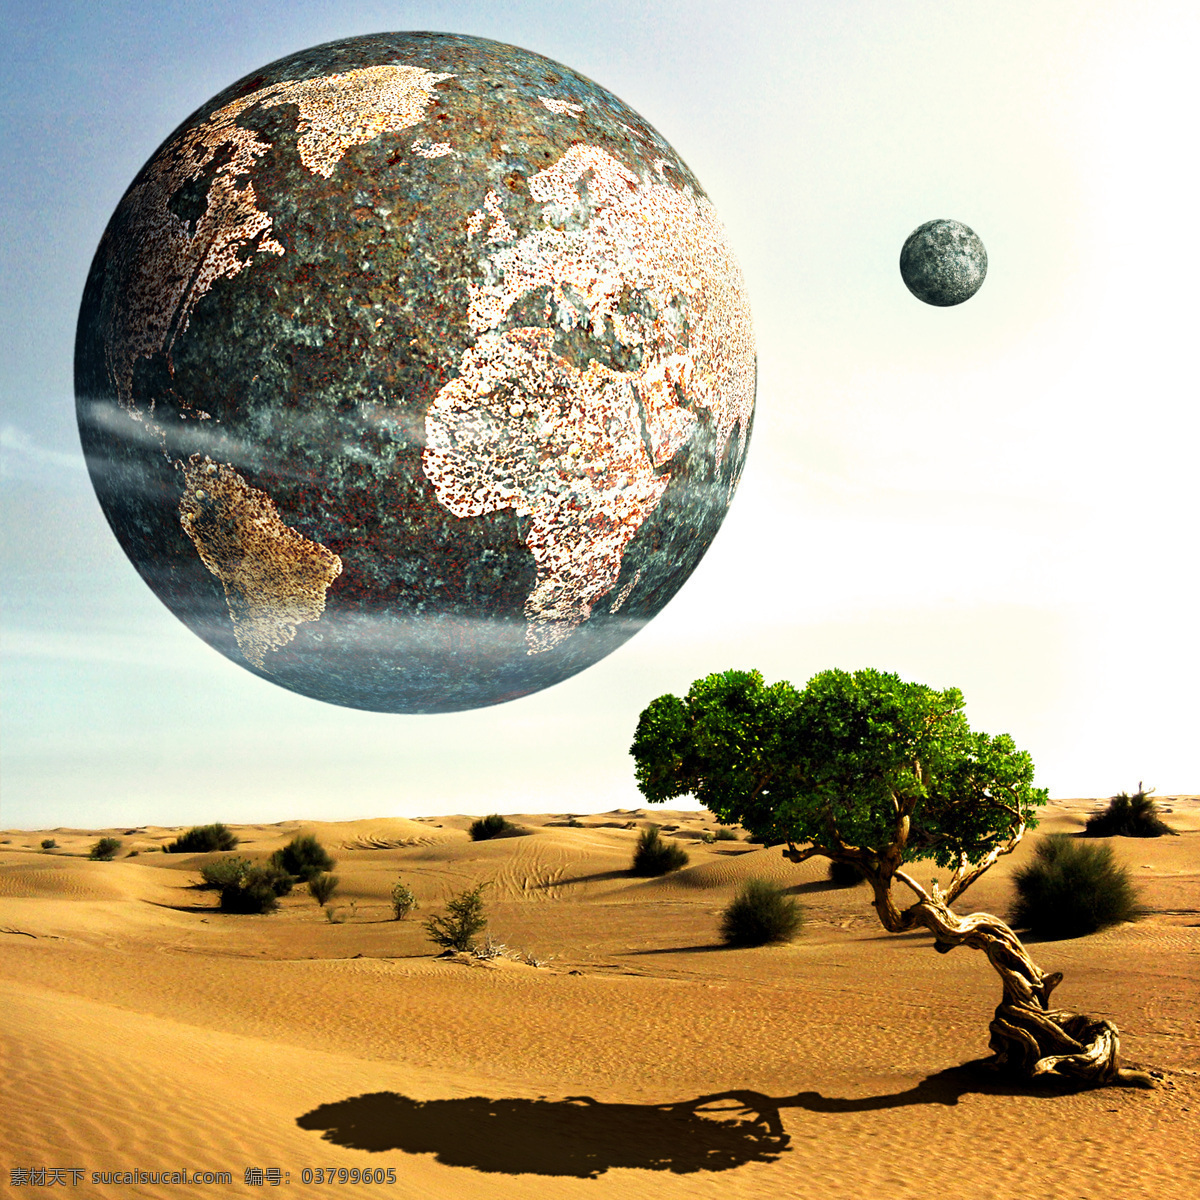 星球 大树 地球 科学研究 魔幻 奇幻 沙漠 现代科技 宇宙 云彩 星空 星际 影子 黄沙